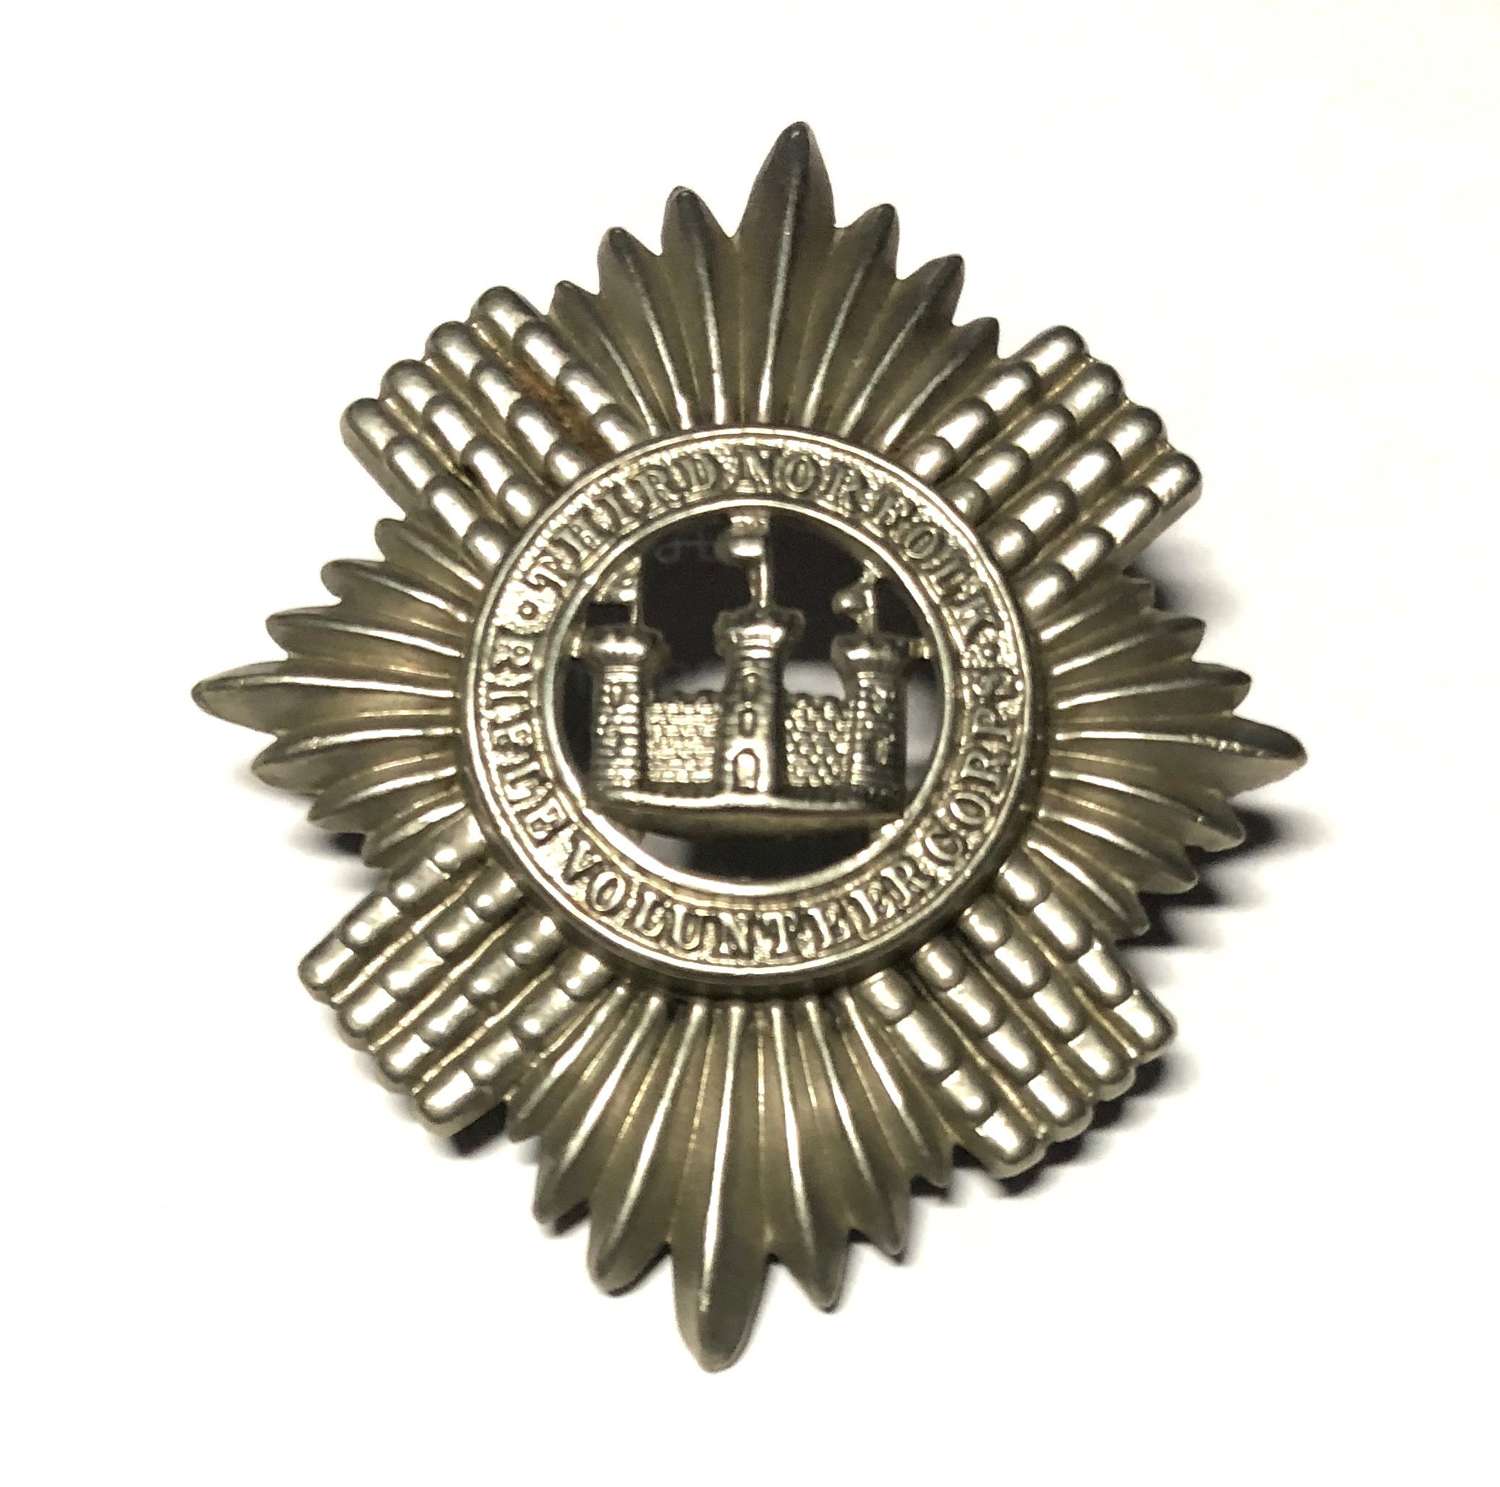 3rd Norfolk Rifle Volunteers Victorian glengarry badge